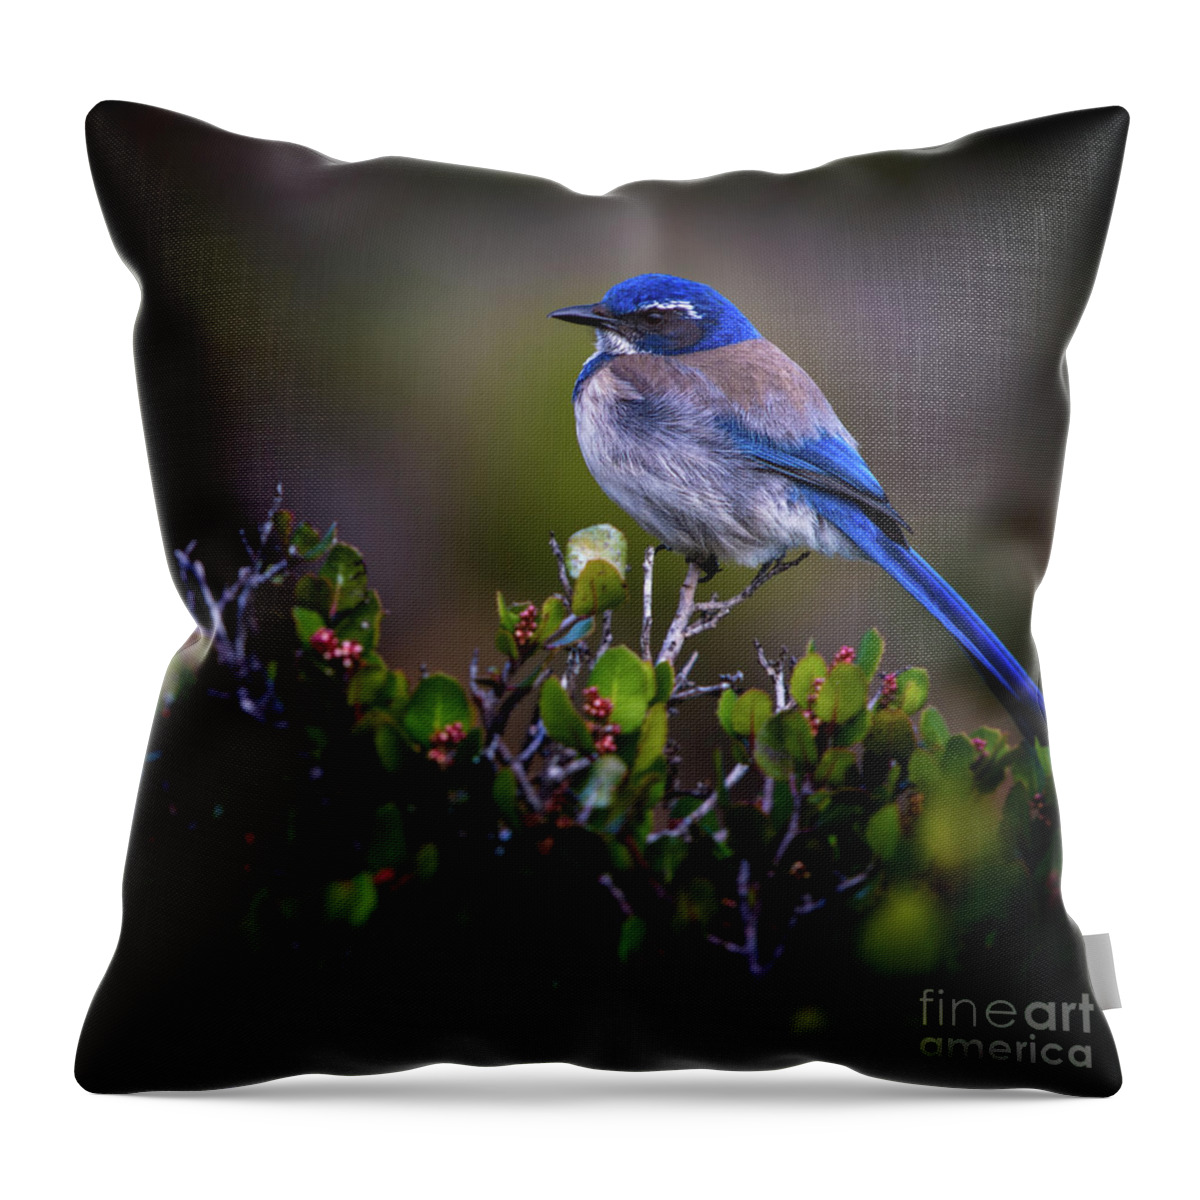 Blue Bird Throw Pillow featuring the photograph San Diego Bluebird by Doug Sturgess